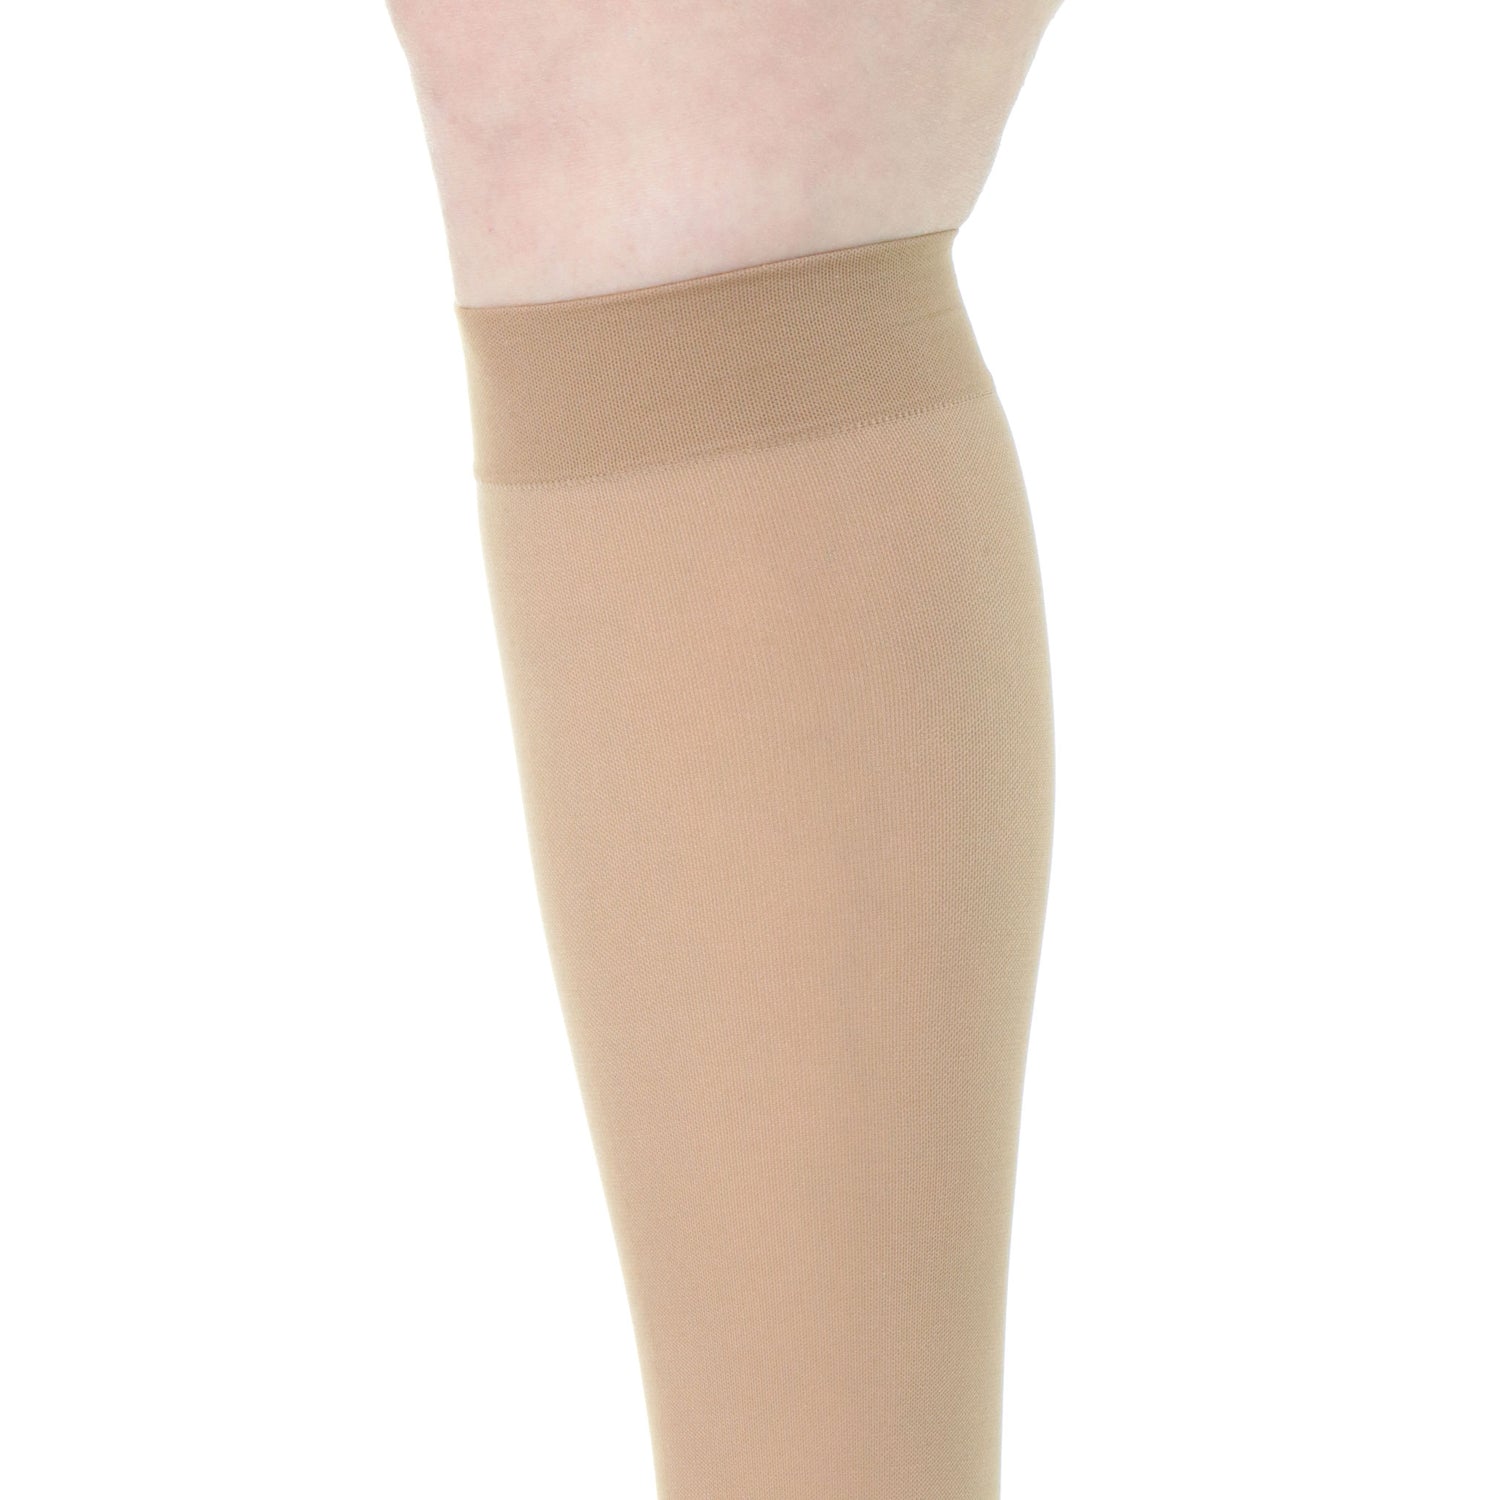 Women Socks 20 30mmHg Medical Varicose Veins Stockings Pantyhose